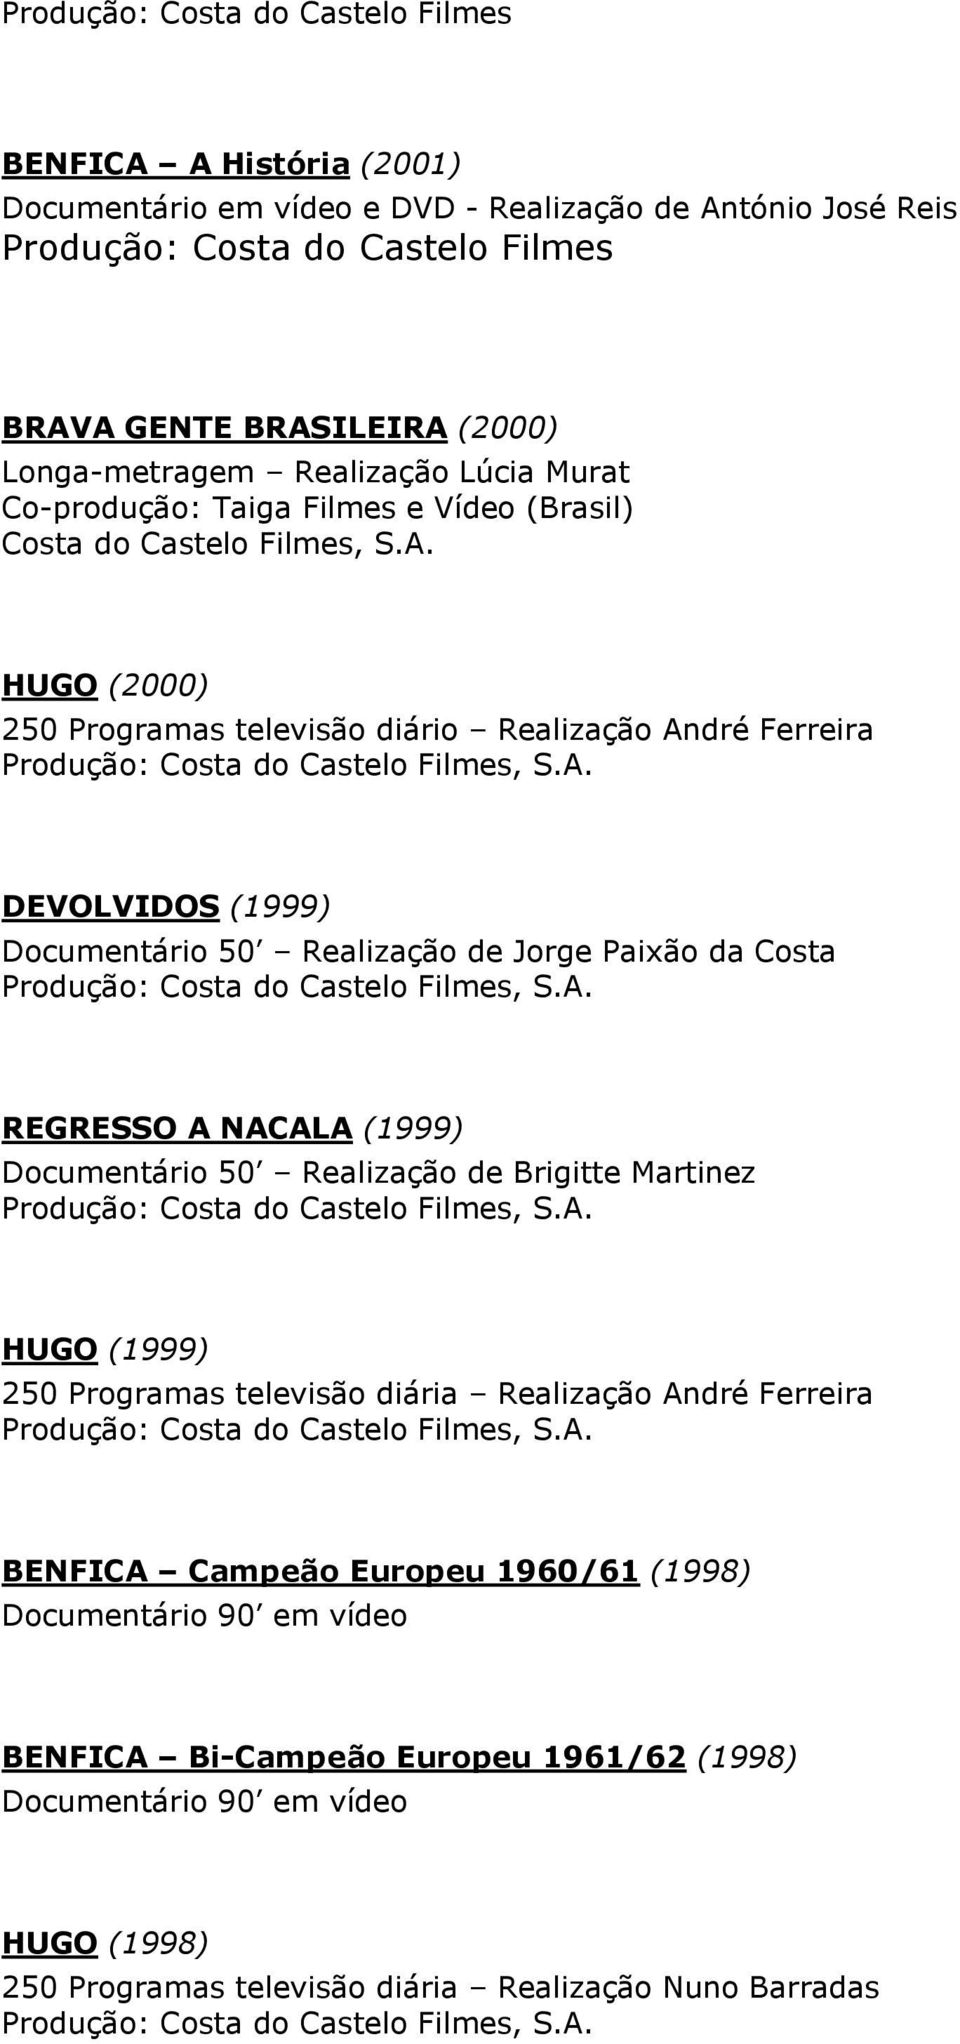 HUGO (2000) 250 Programas televisão diário Realização André Ferreira DEVOLVIDOS (1999) Documentário 50 Realização de Jorge Paixão da Costa REGRESSO A NACALA (1999) Documentário 50 Realização de